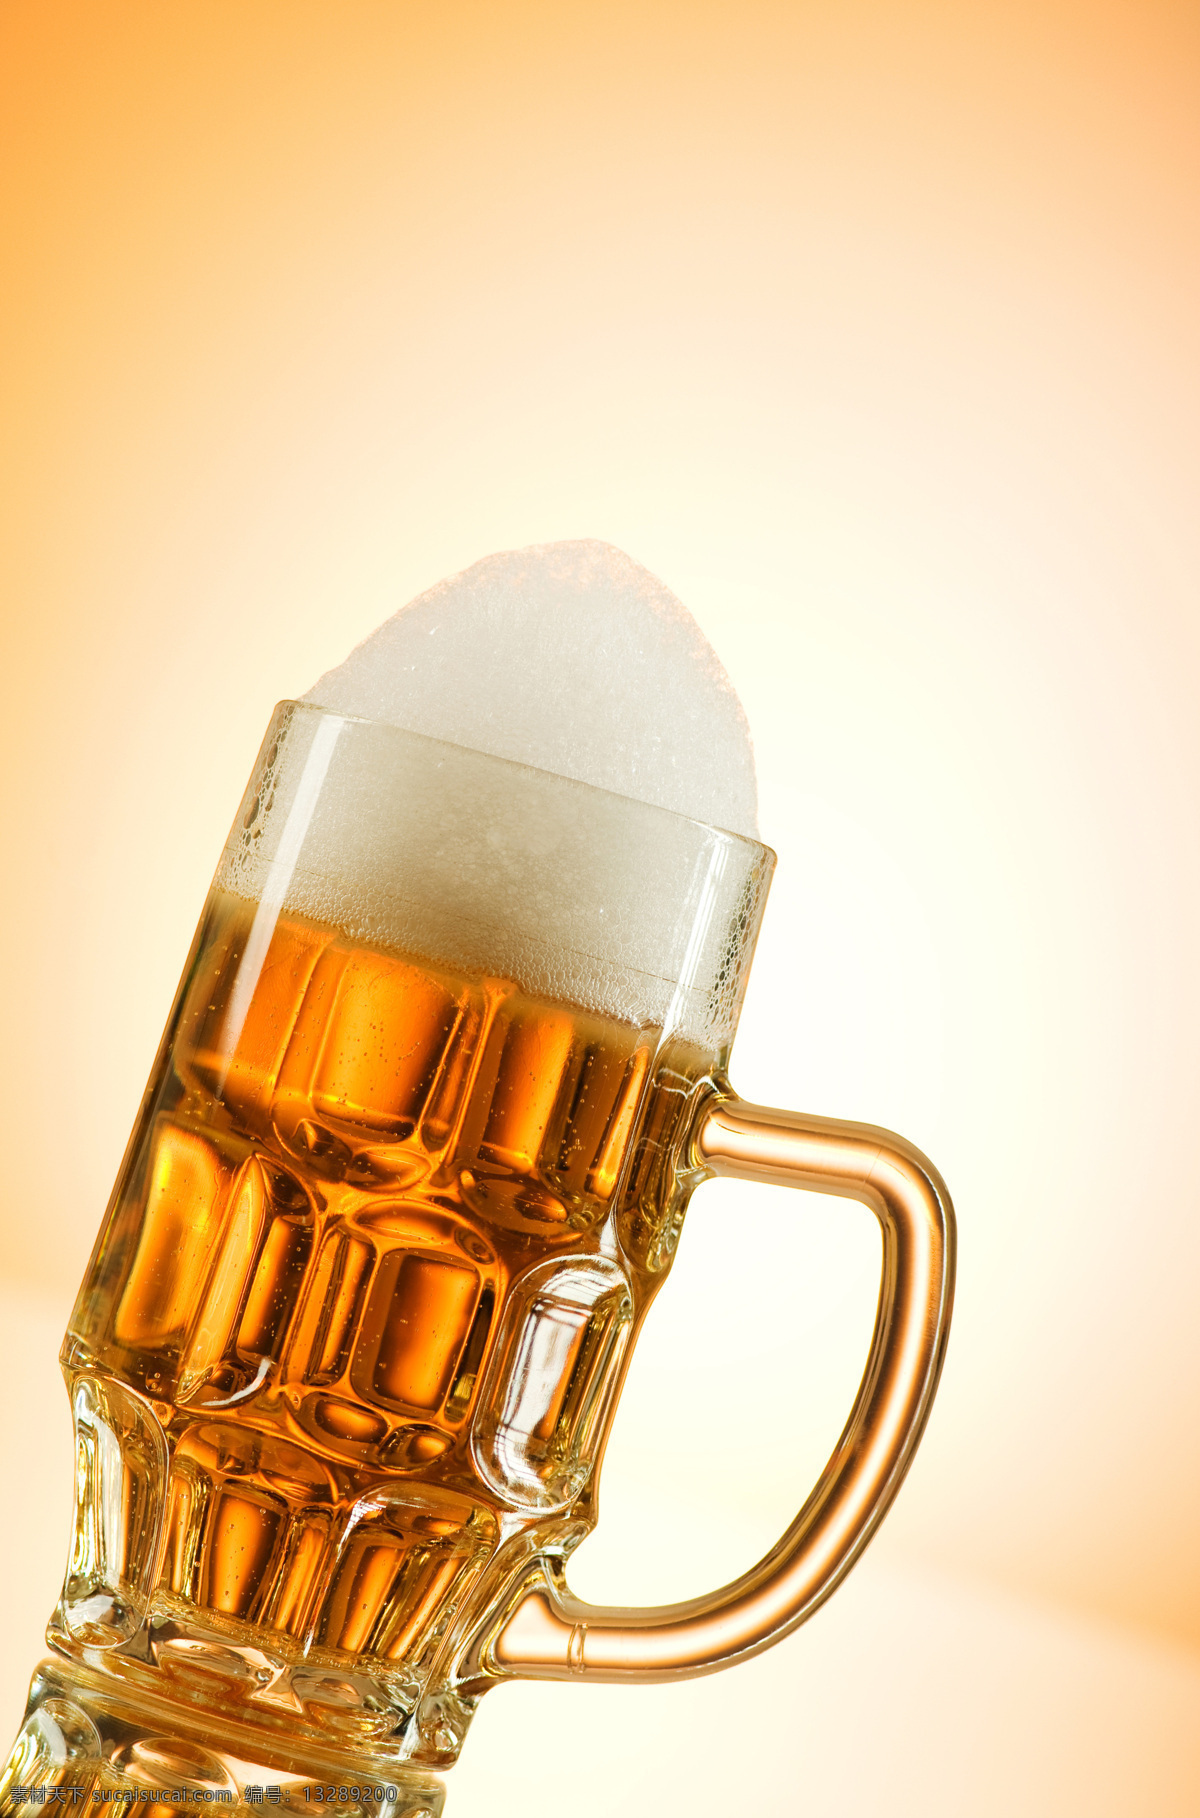 一杯 啤酒 带沫啤酒 玻璃杯 酒水饮料 餐饮美食 酒类图片